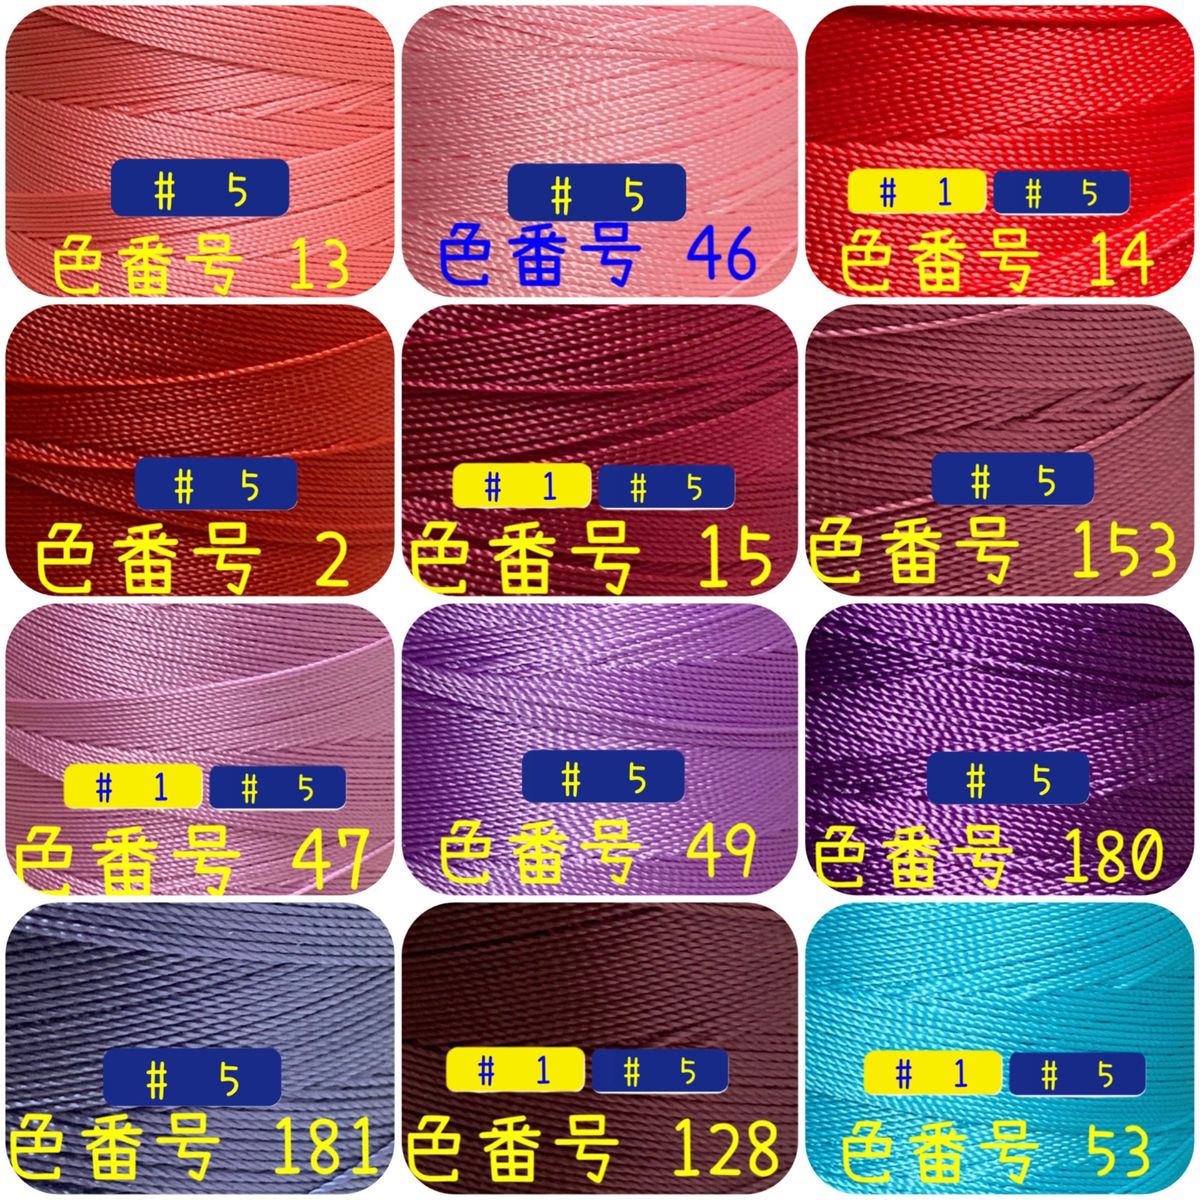 【4点】ビニモMBT #1 #5 #8 レザークラフト手縫い糸